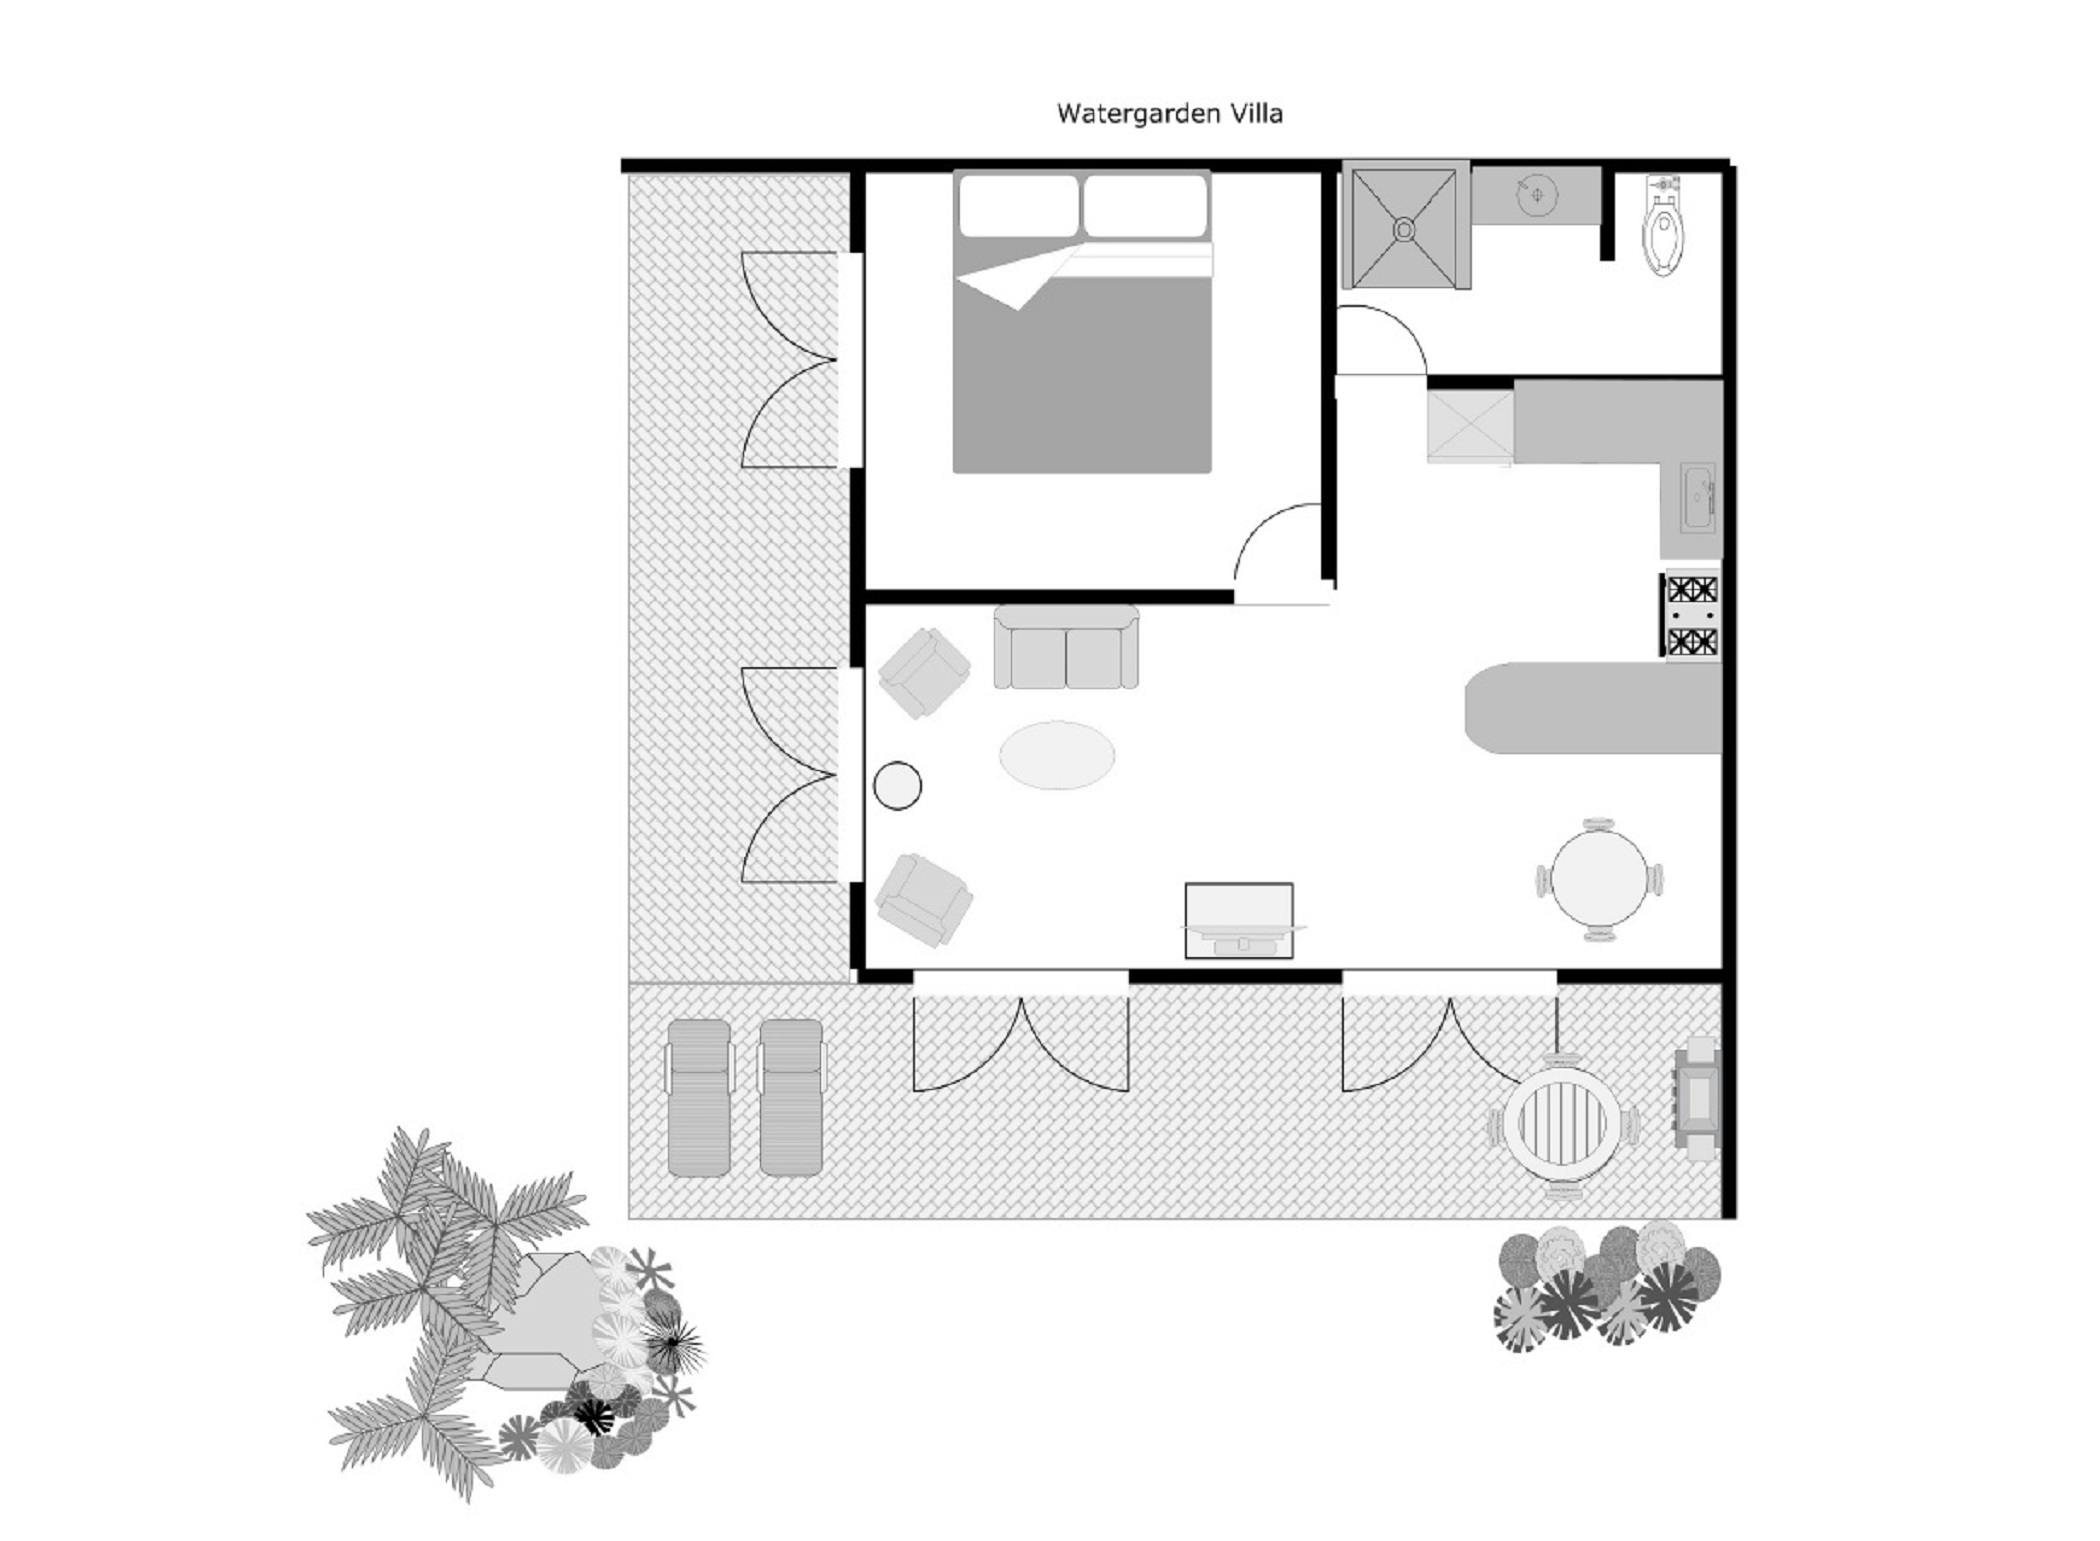 muri-beachcomber-rarotonga-watergarden-villa-floor- plan-layout